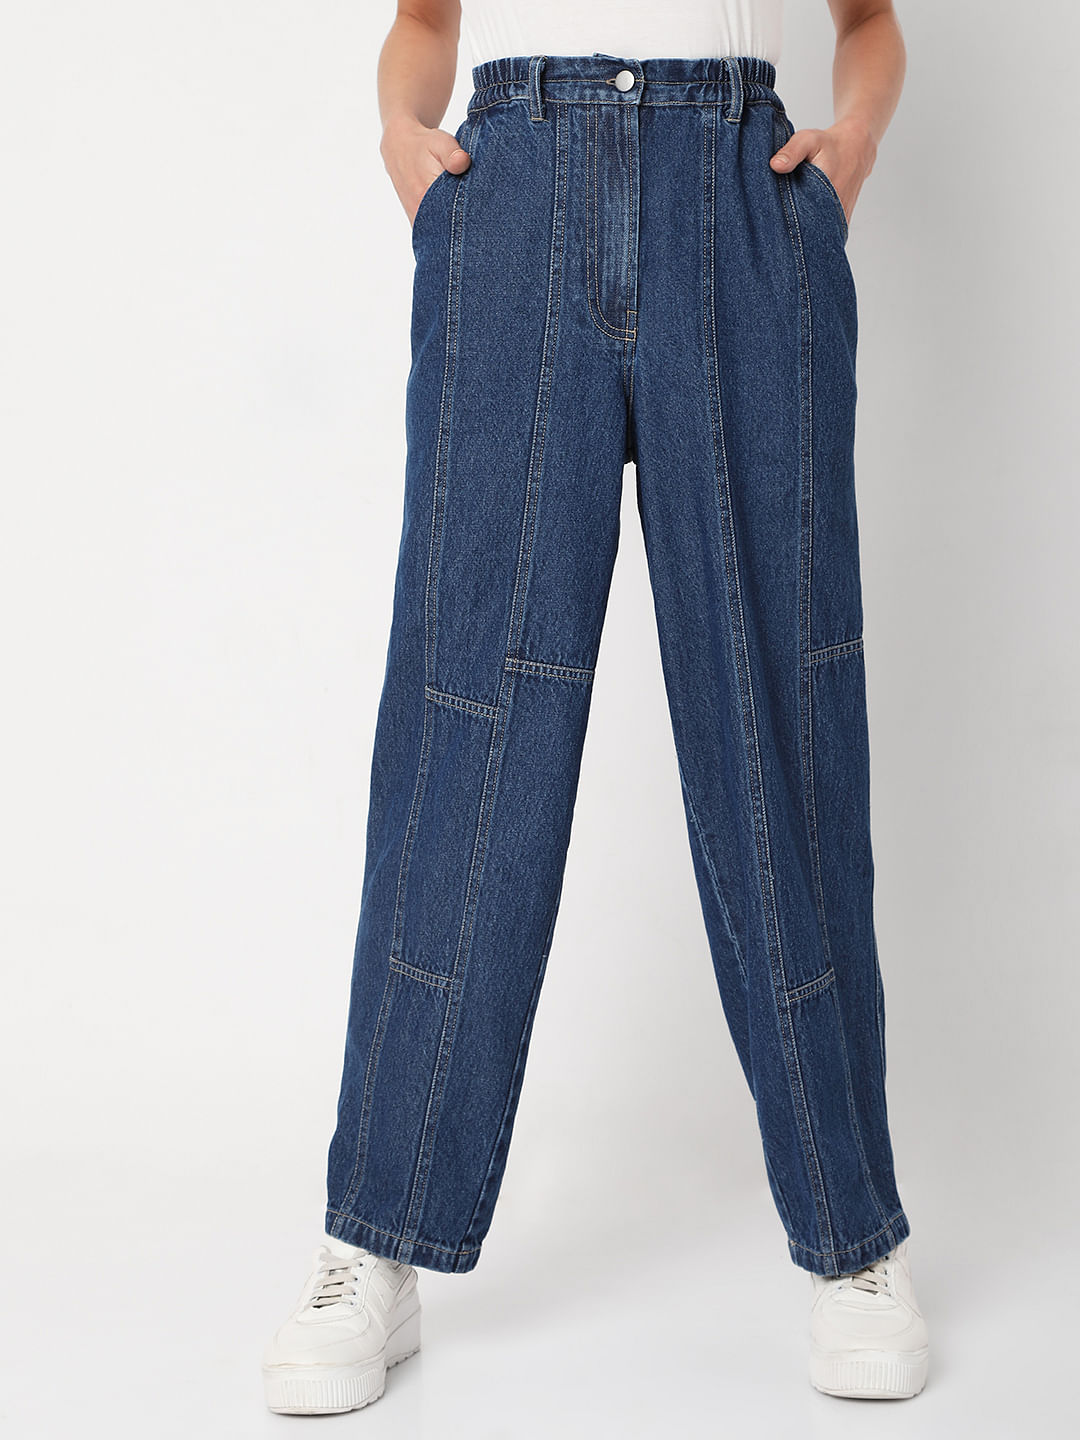 Rufskin Reed Jeans Pants - Dark Indigo | INDERWEAR